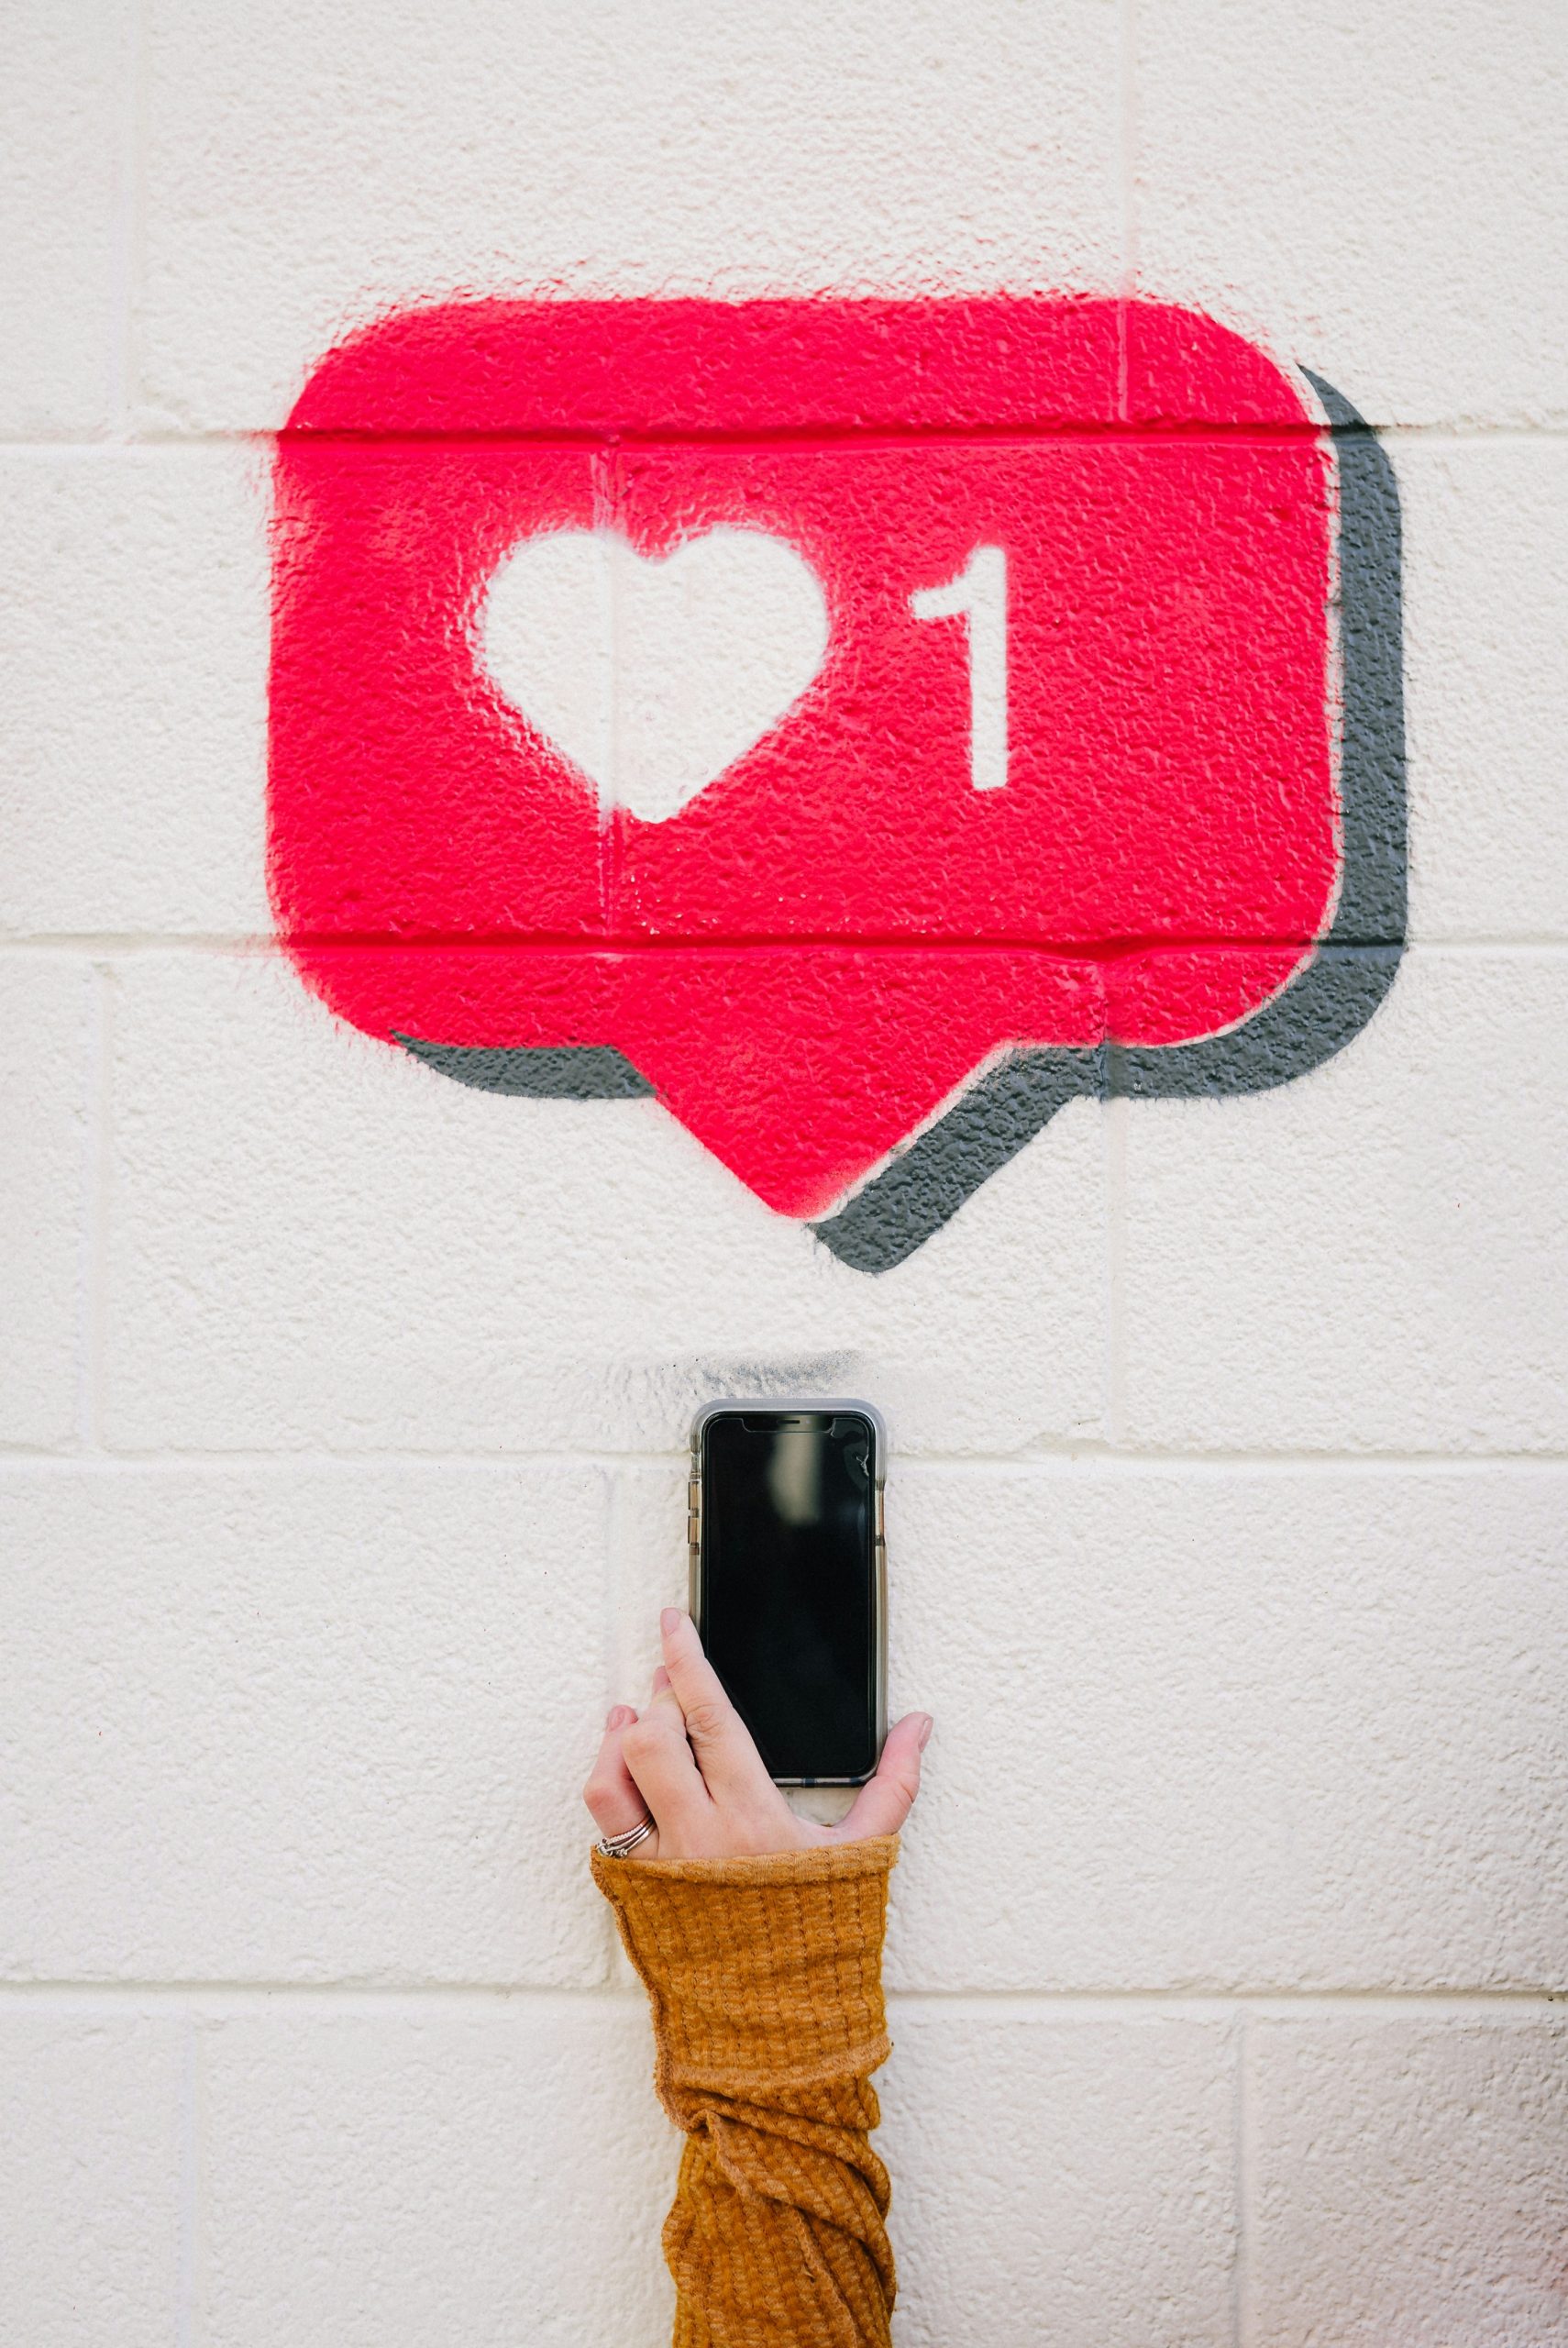 Ein roter Like-Button mit Herz auf einer weißen Wand gesprayt. Davor ein Arm mit Ring am Finger und orangen Ärmel, der ein Smartphone hochhält.